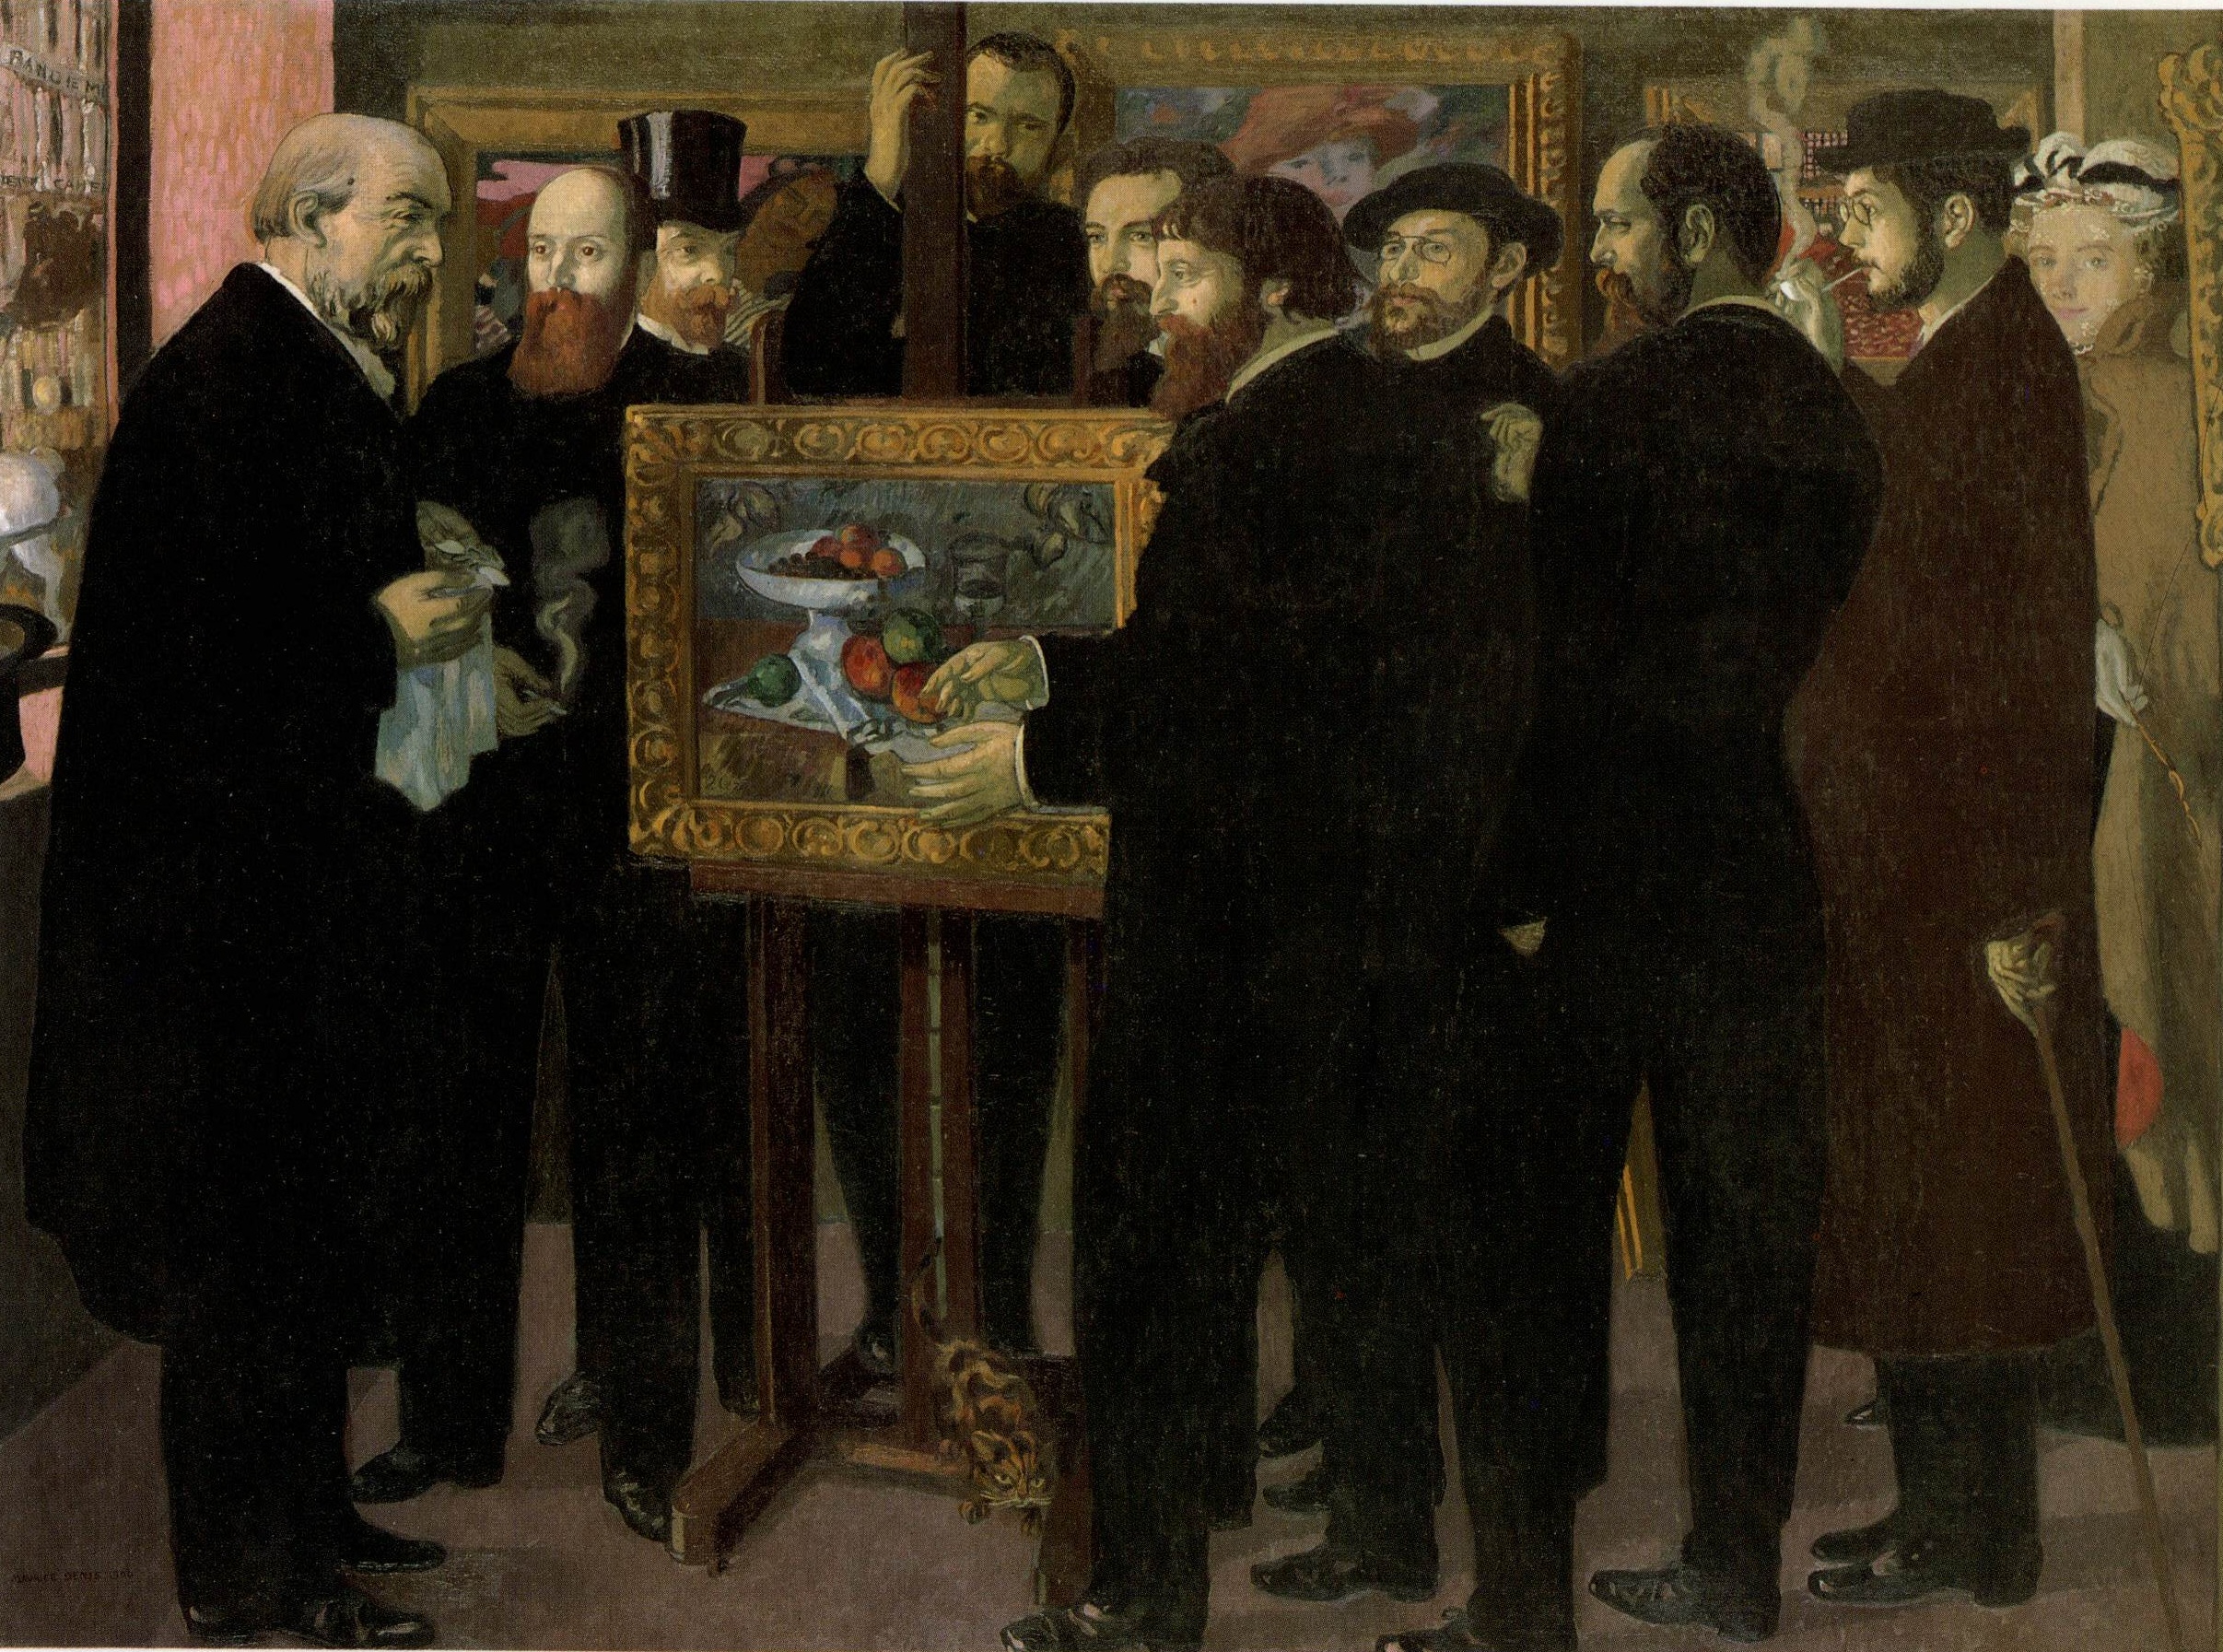 Hommage à Cézanne by Maurice Denis - 1900 - 180 x 240 cm Musée d'Orsay